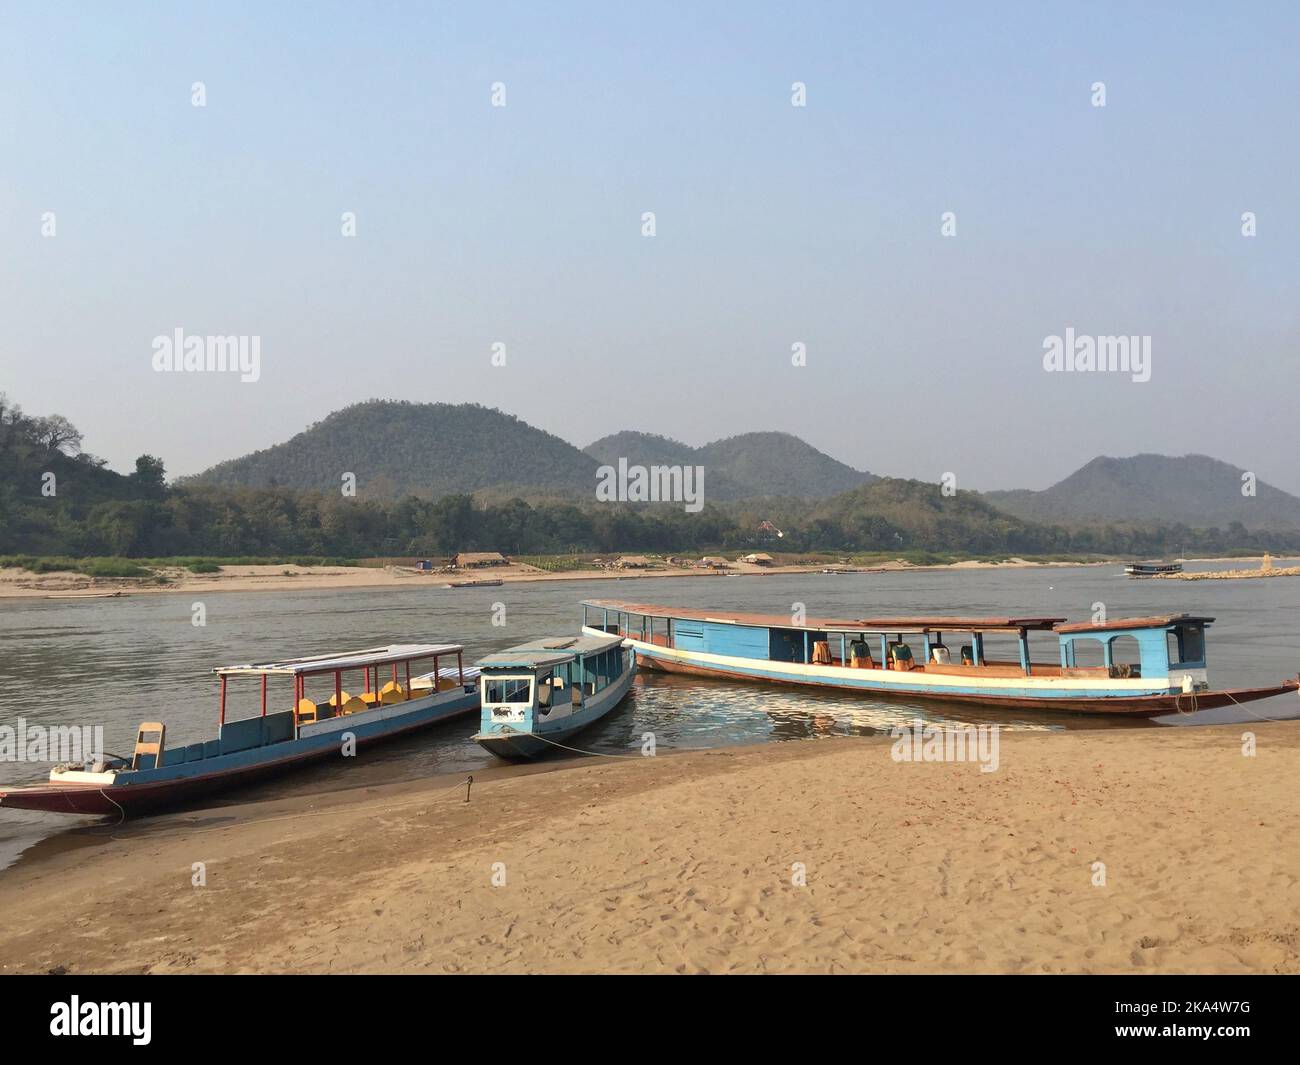 Three traditional boats moored on riverbank of Mekong river, Luang Prabang, Laos Stock Photo